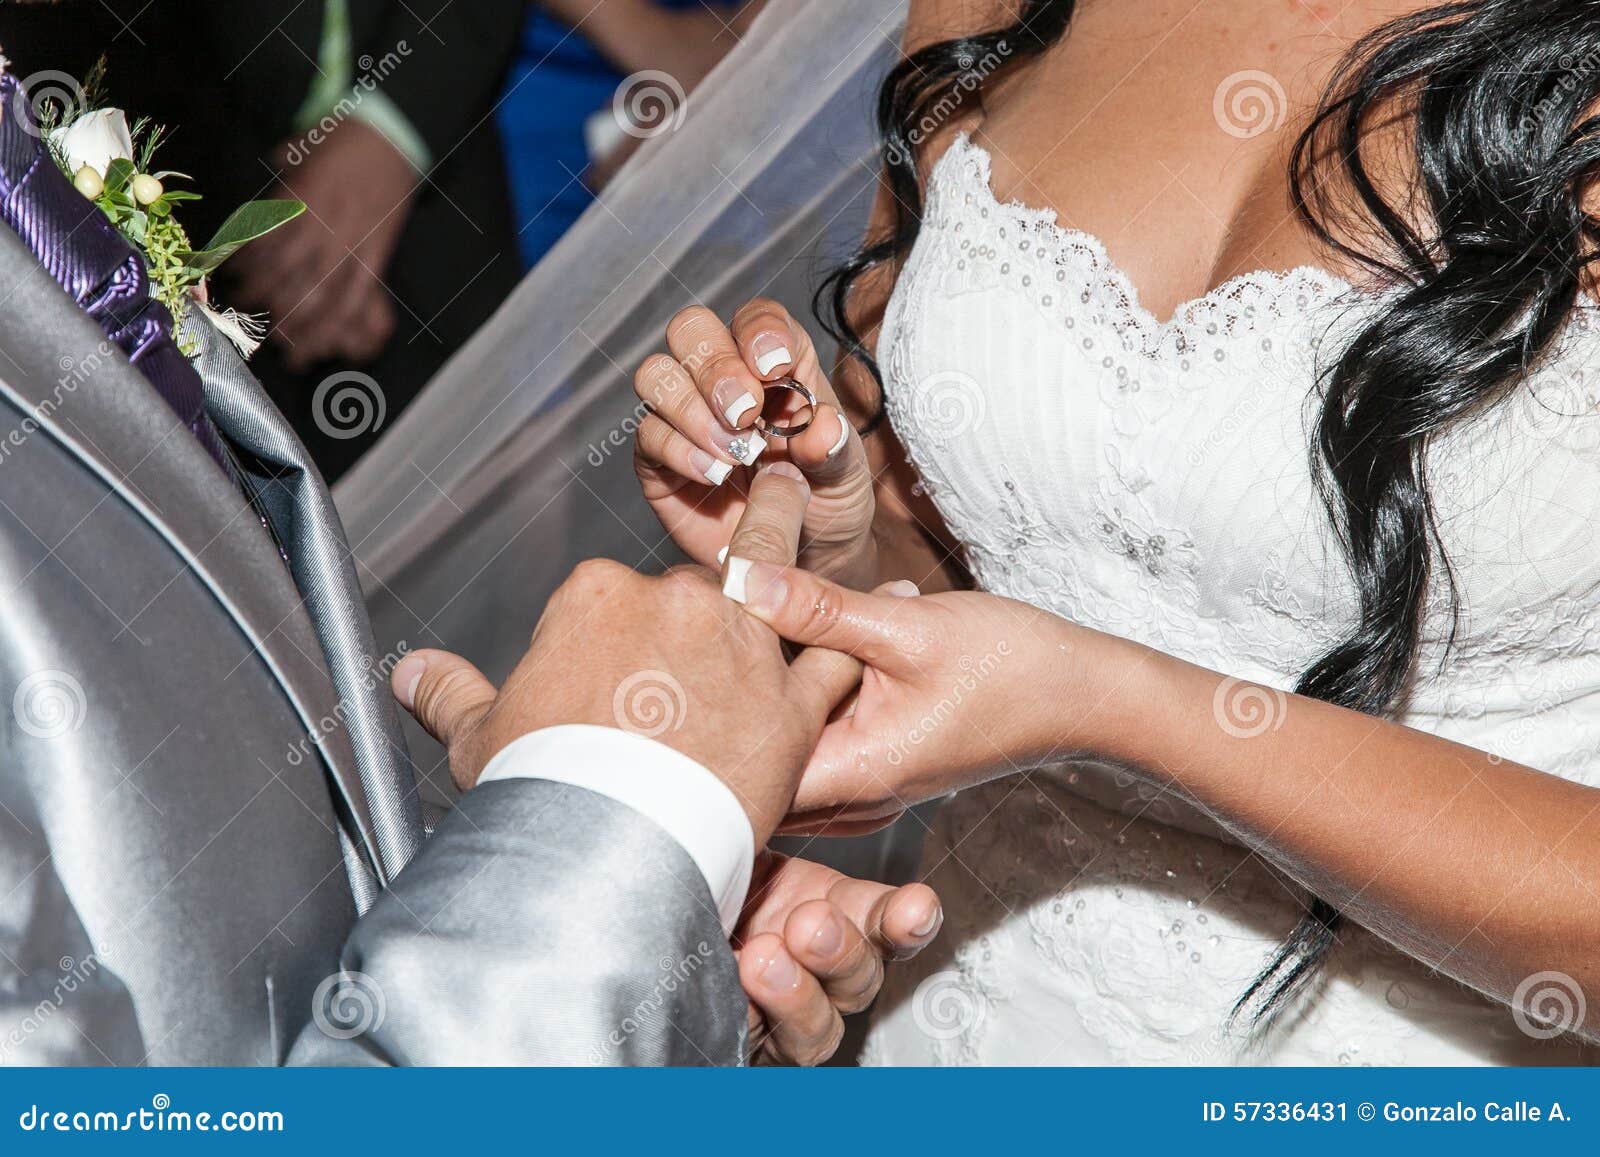 Groom wedding ring finger